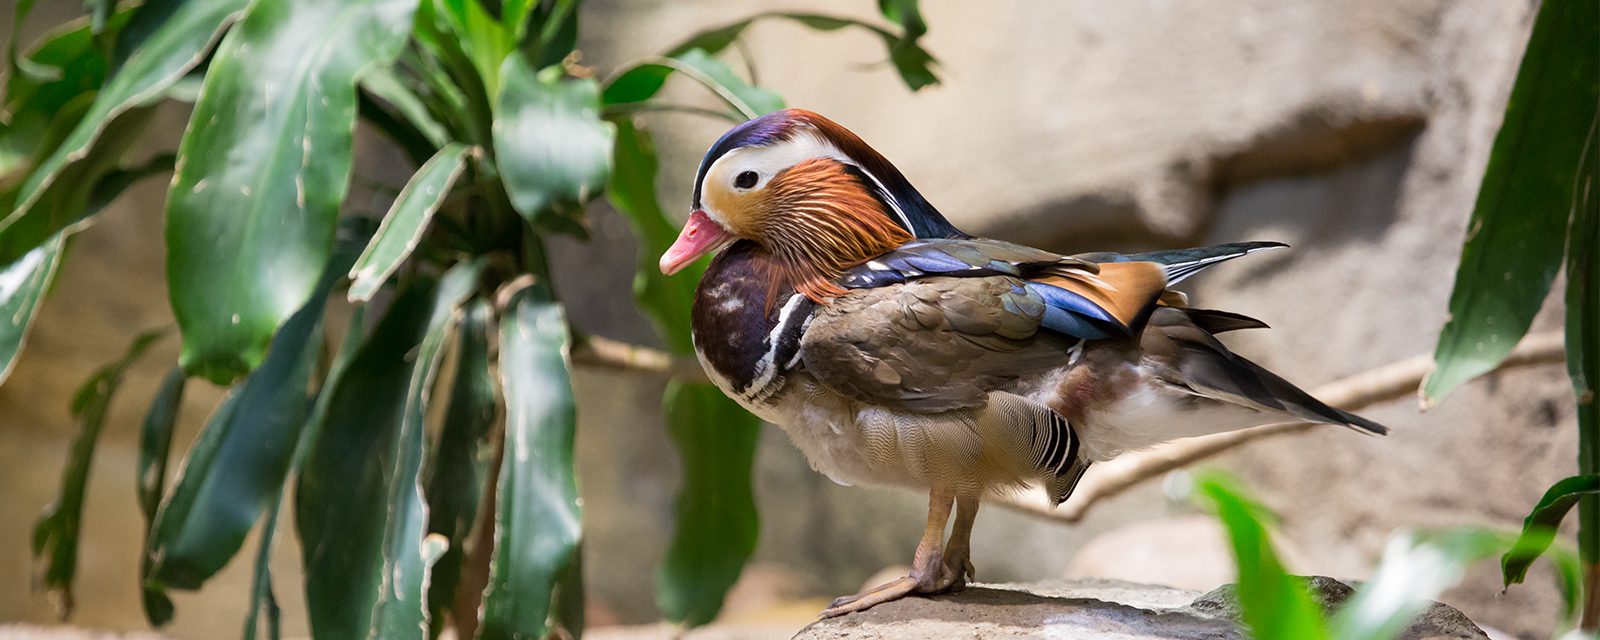 Mandarin duck in exhibit